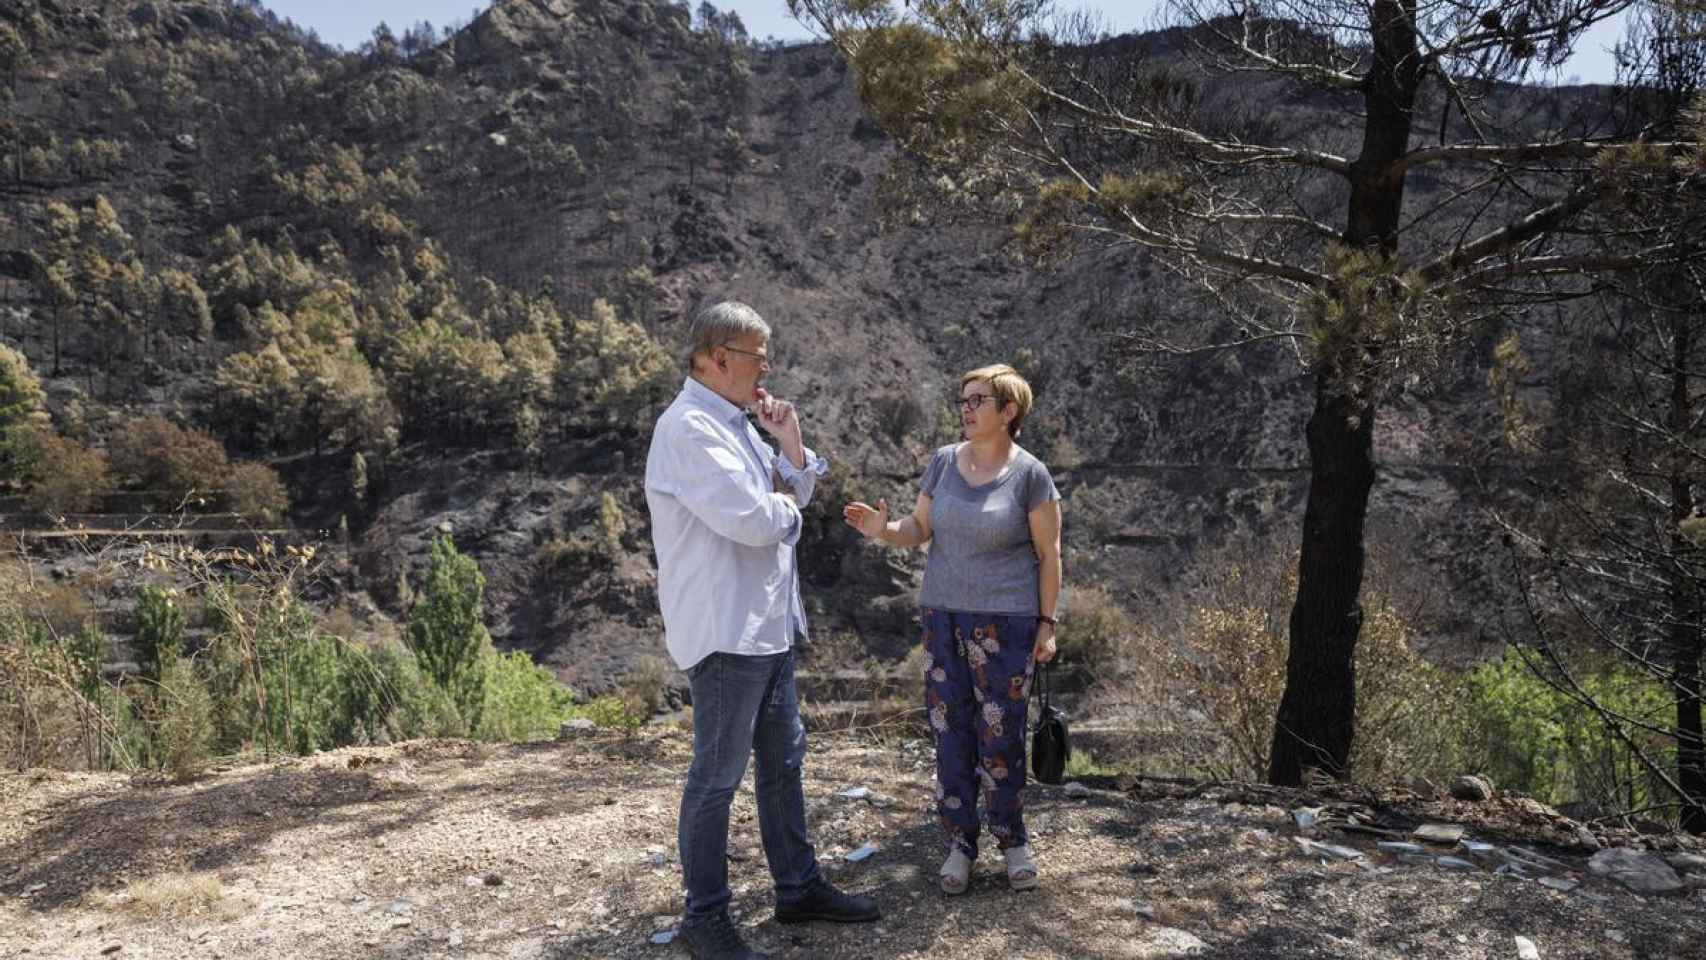 El president Ximo Puig visita la zona afectada por el incendio junto a la alcaldesa de Bejís María José Madrid.